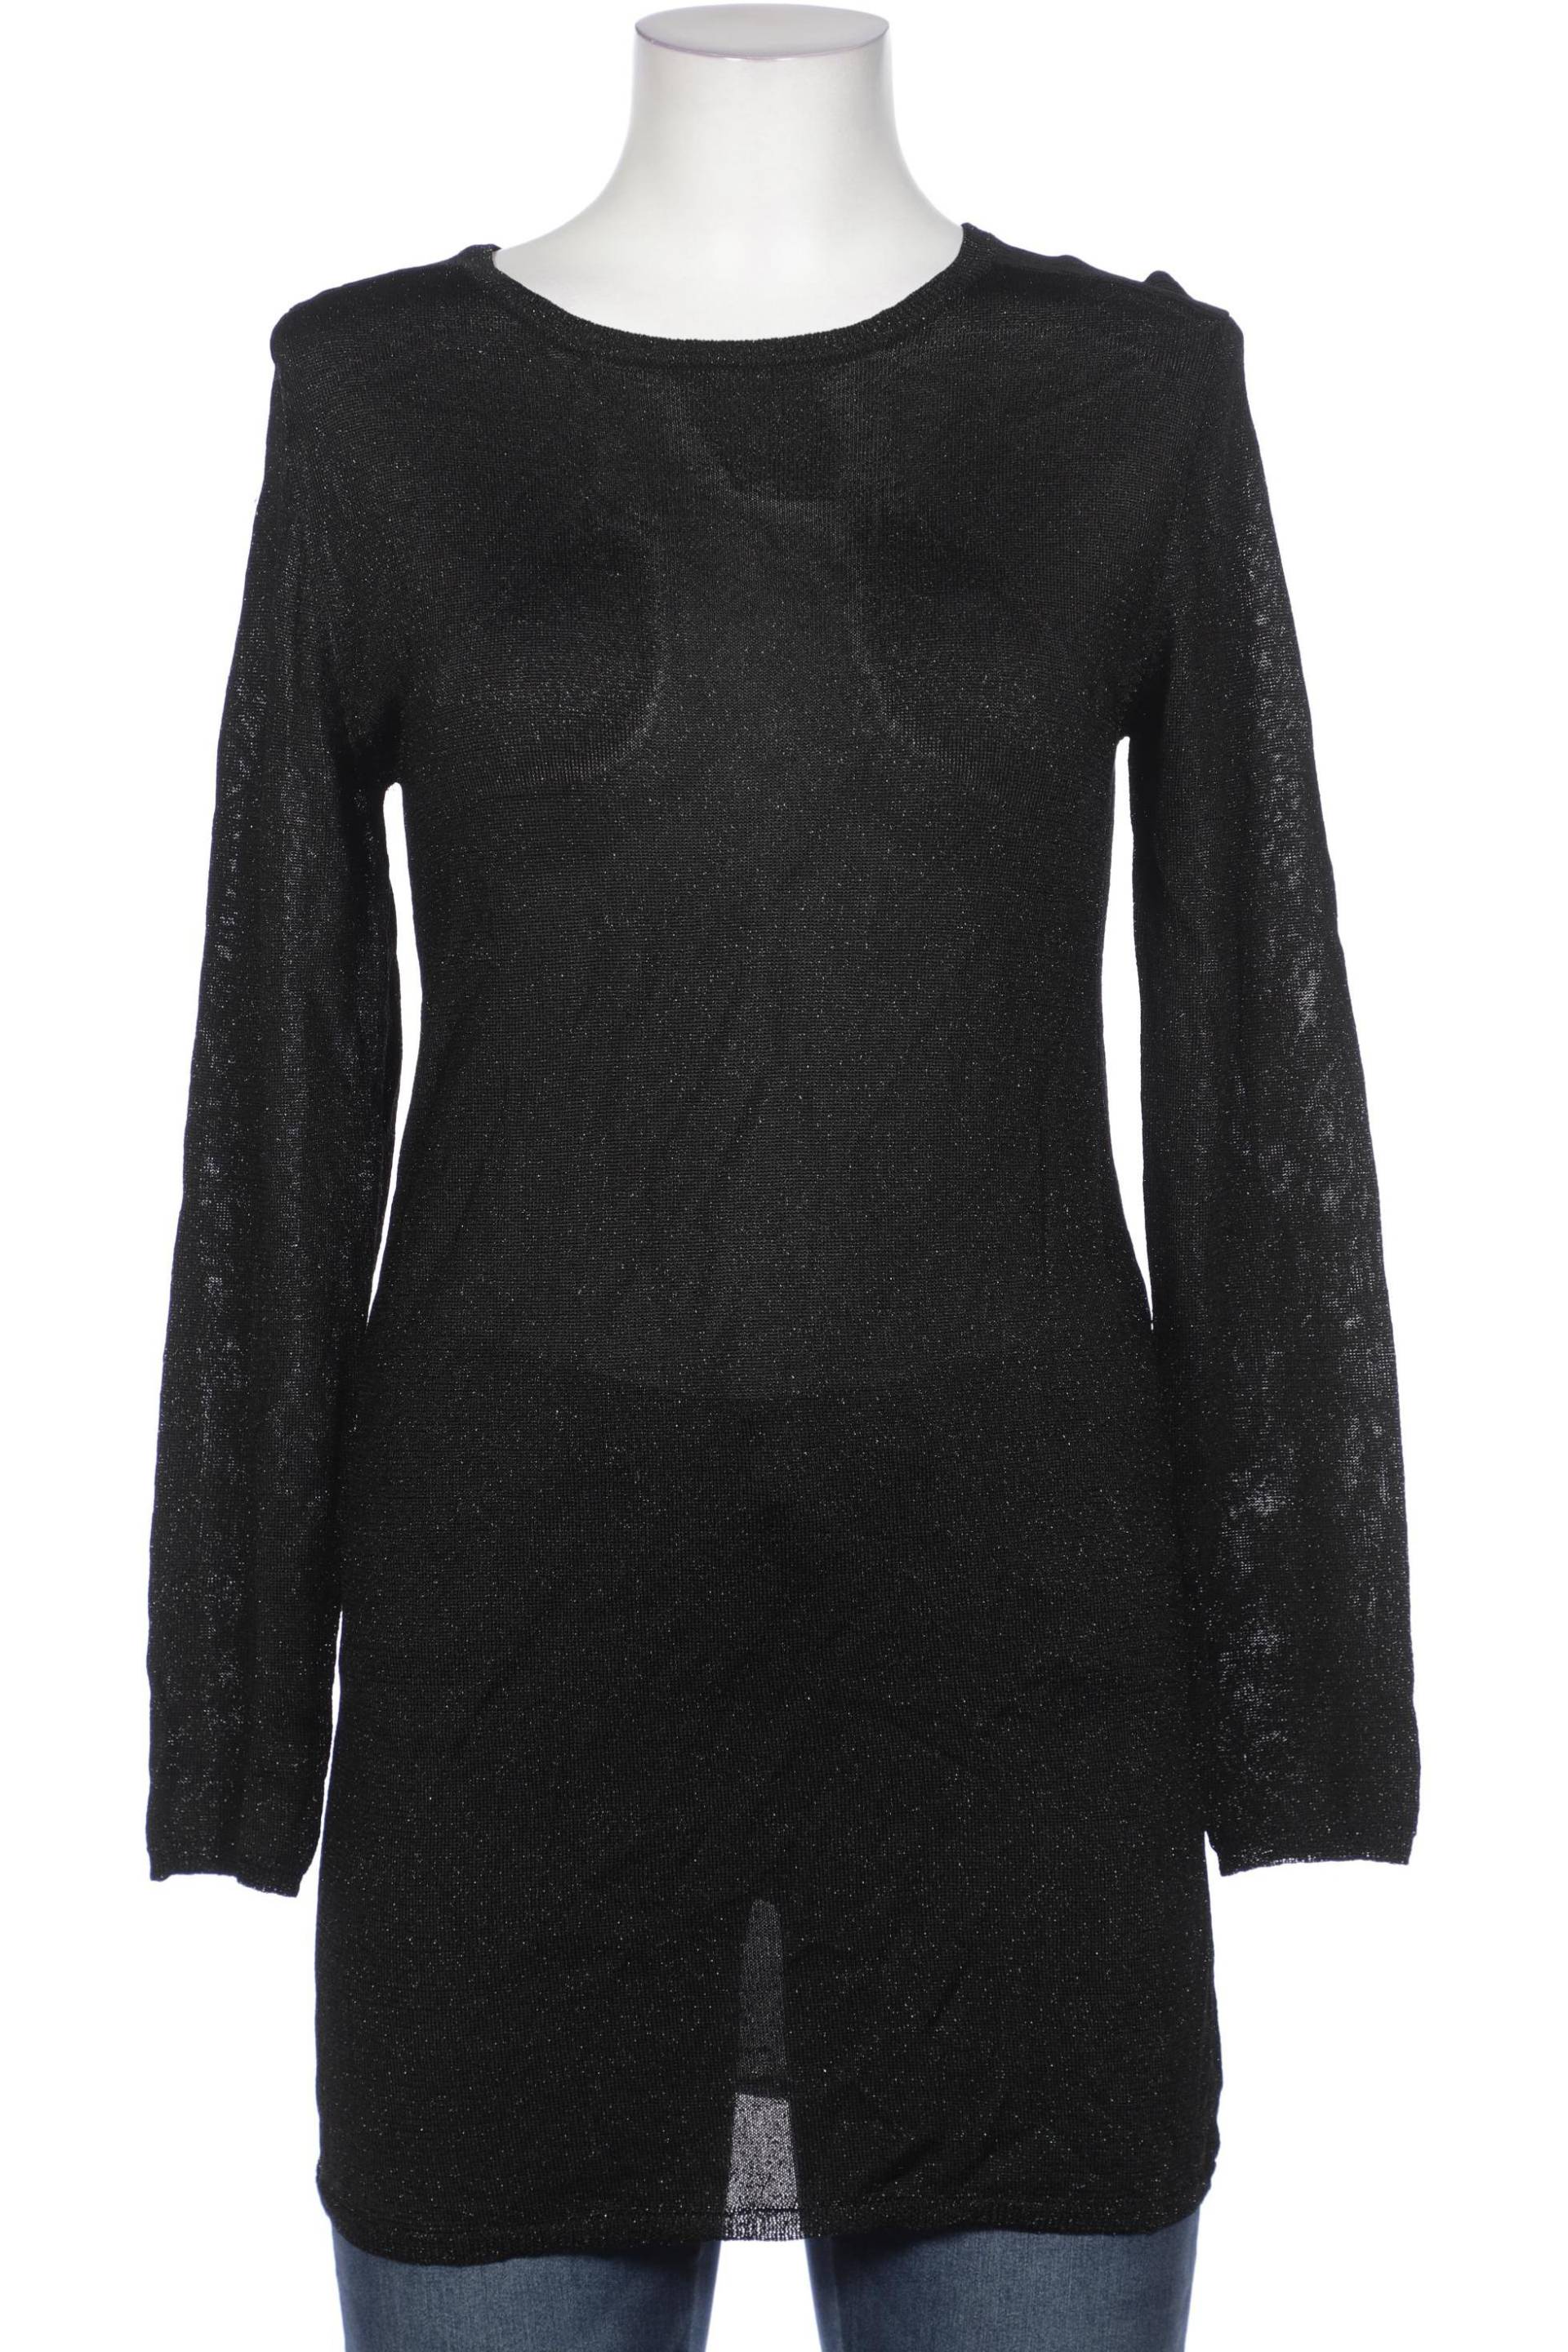 Filippa K Damen Pullover, schwarz von Filippa K